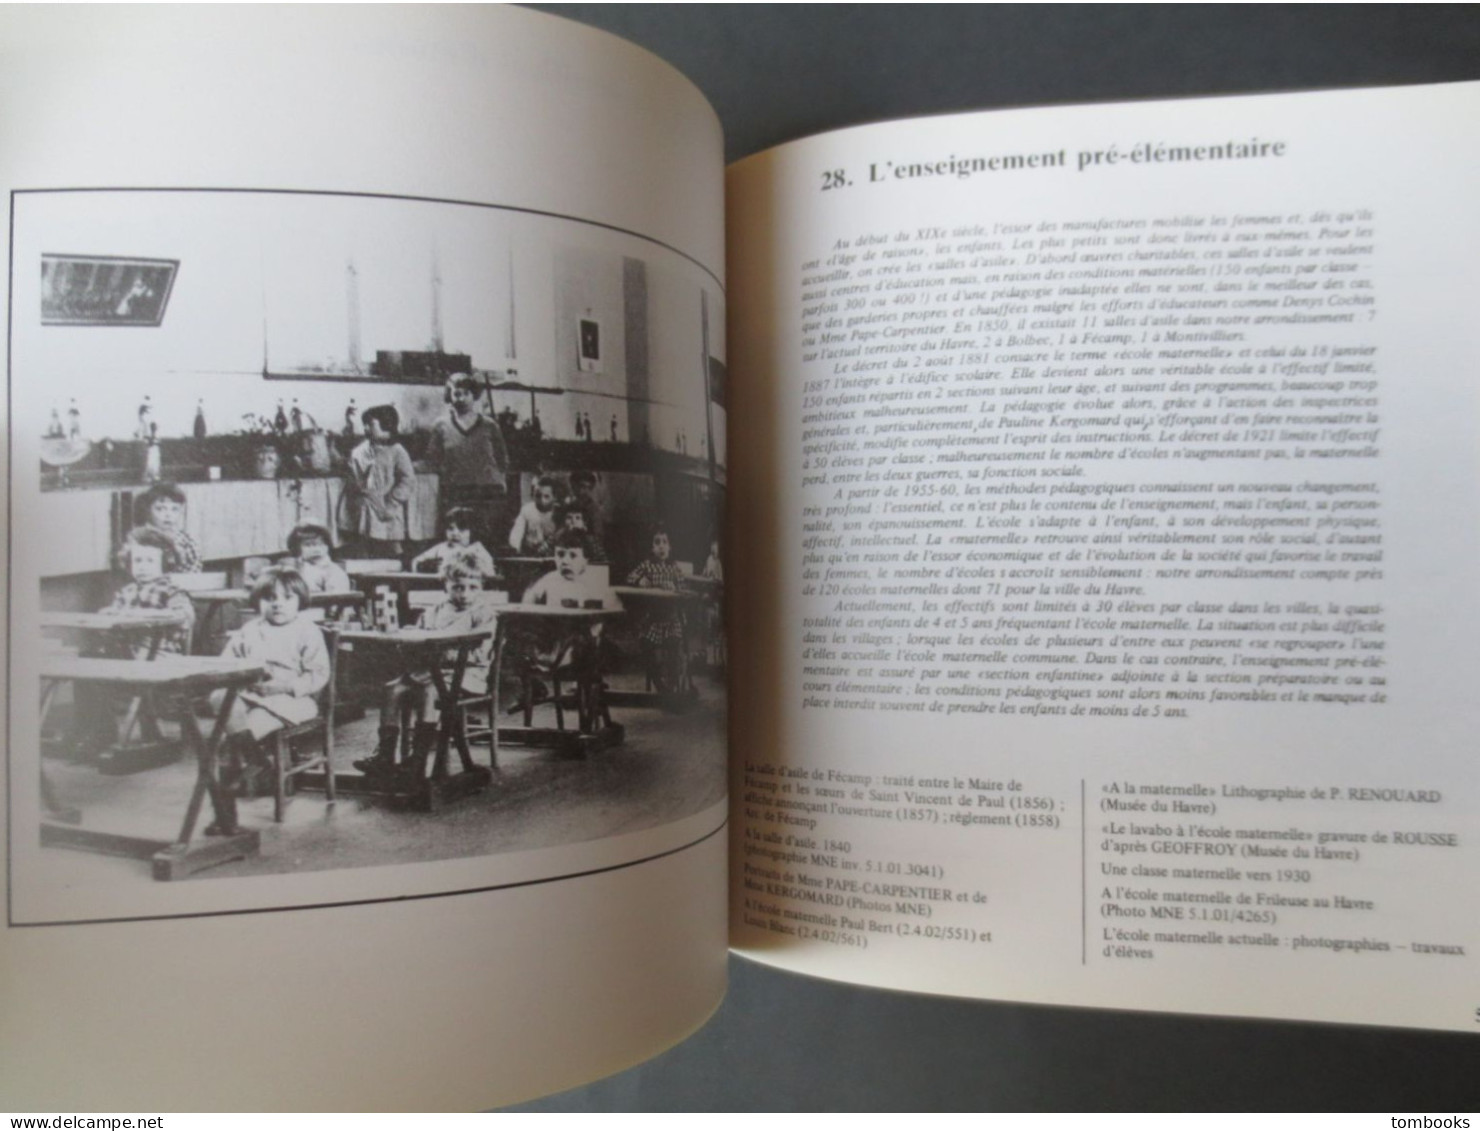 Le Havre - livre - Cent Ans d'Ecole Laîque - nombreuses communes Normandes pour les Archives - 1982 - Peu commun -